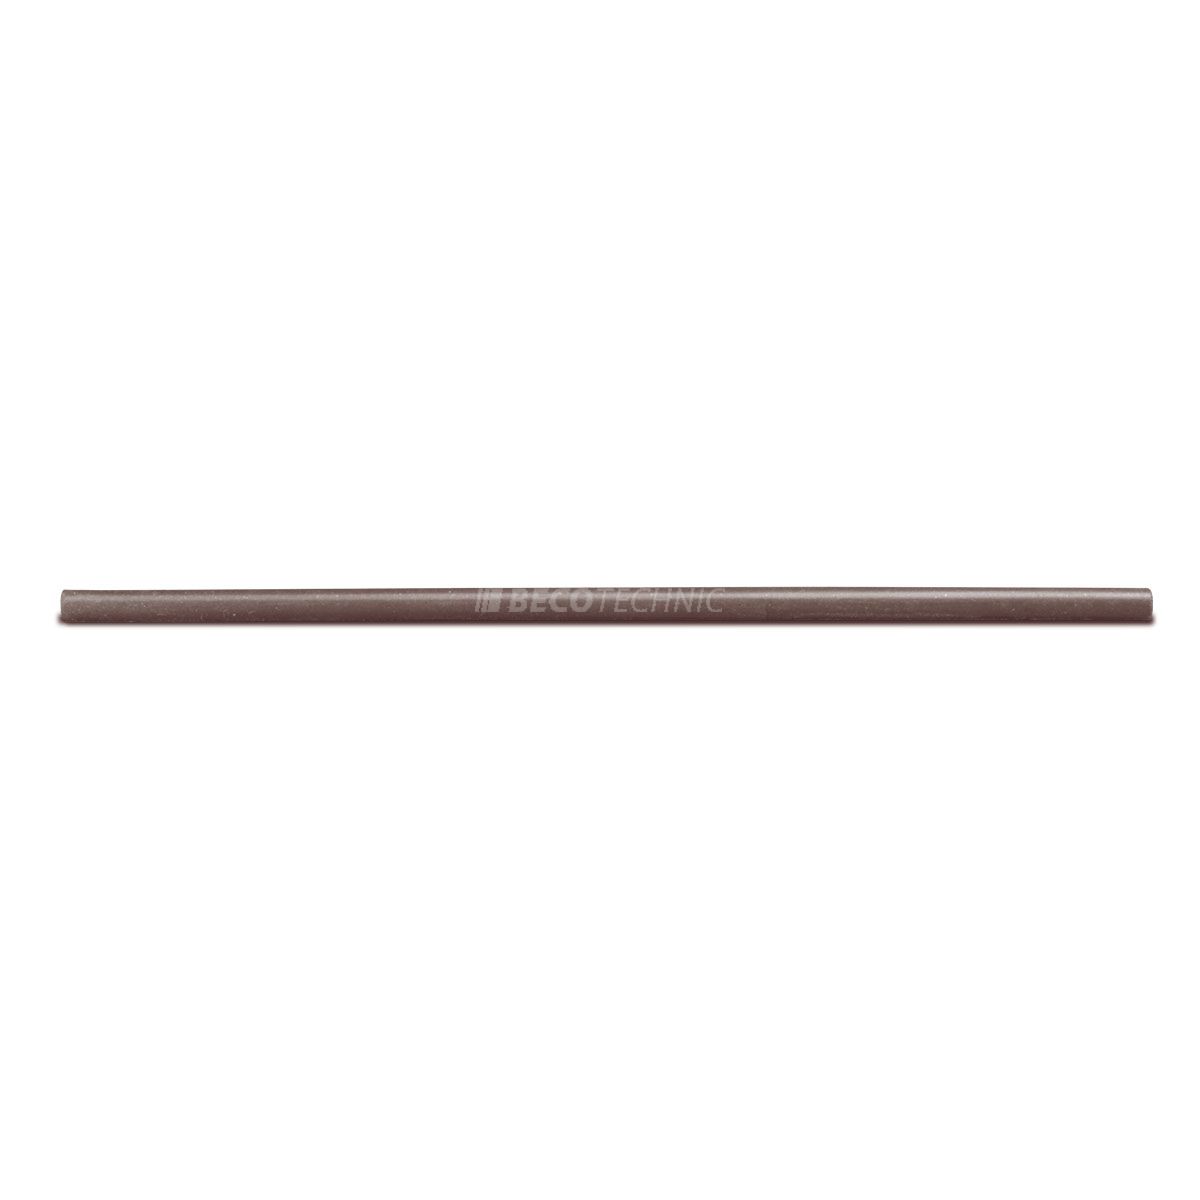 Cratex bâton de broyage, Ø 6 x 150 mm, Taille du grain 90, Rond, Brun foncé